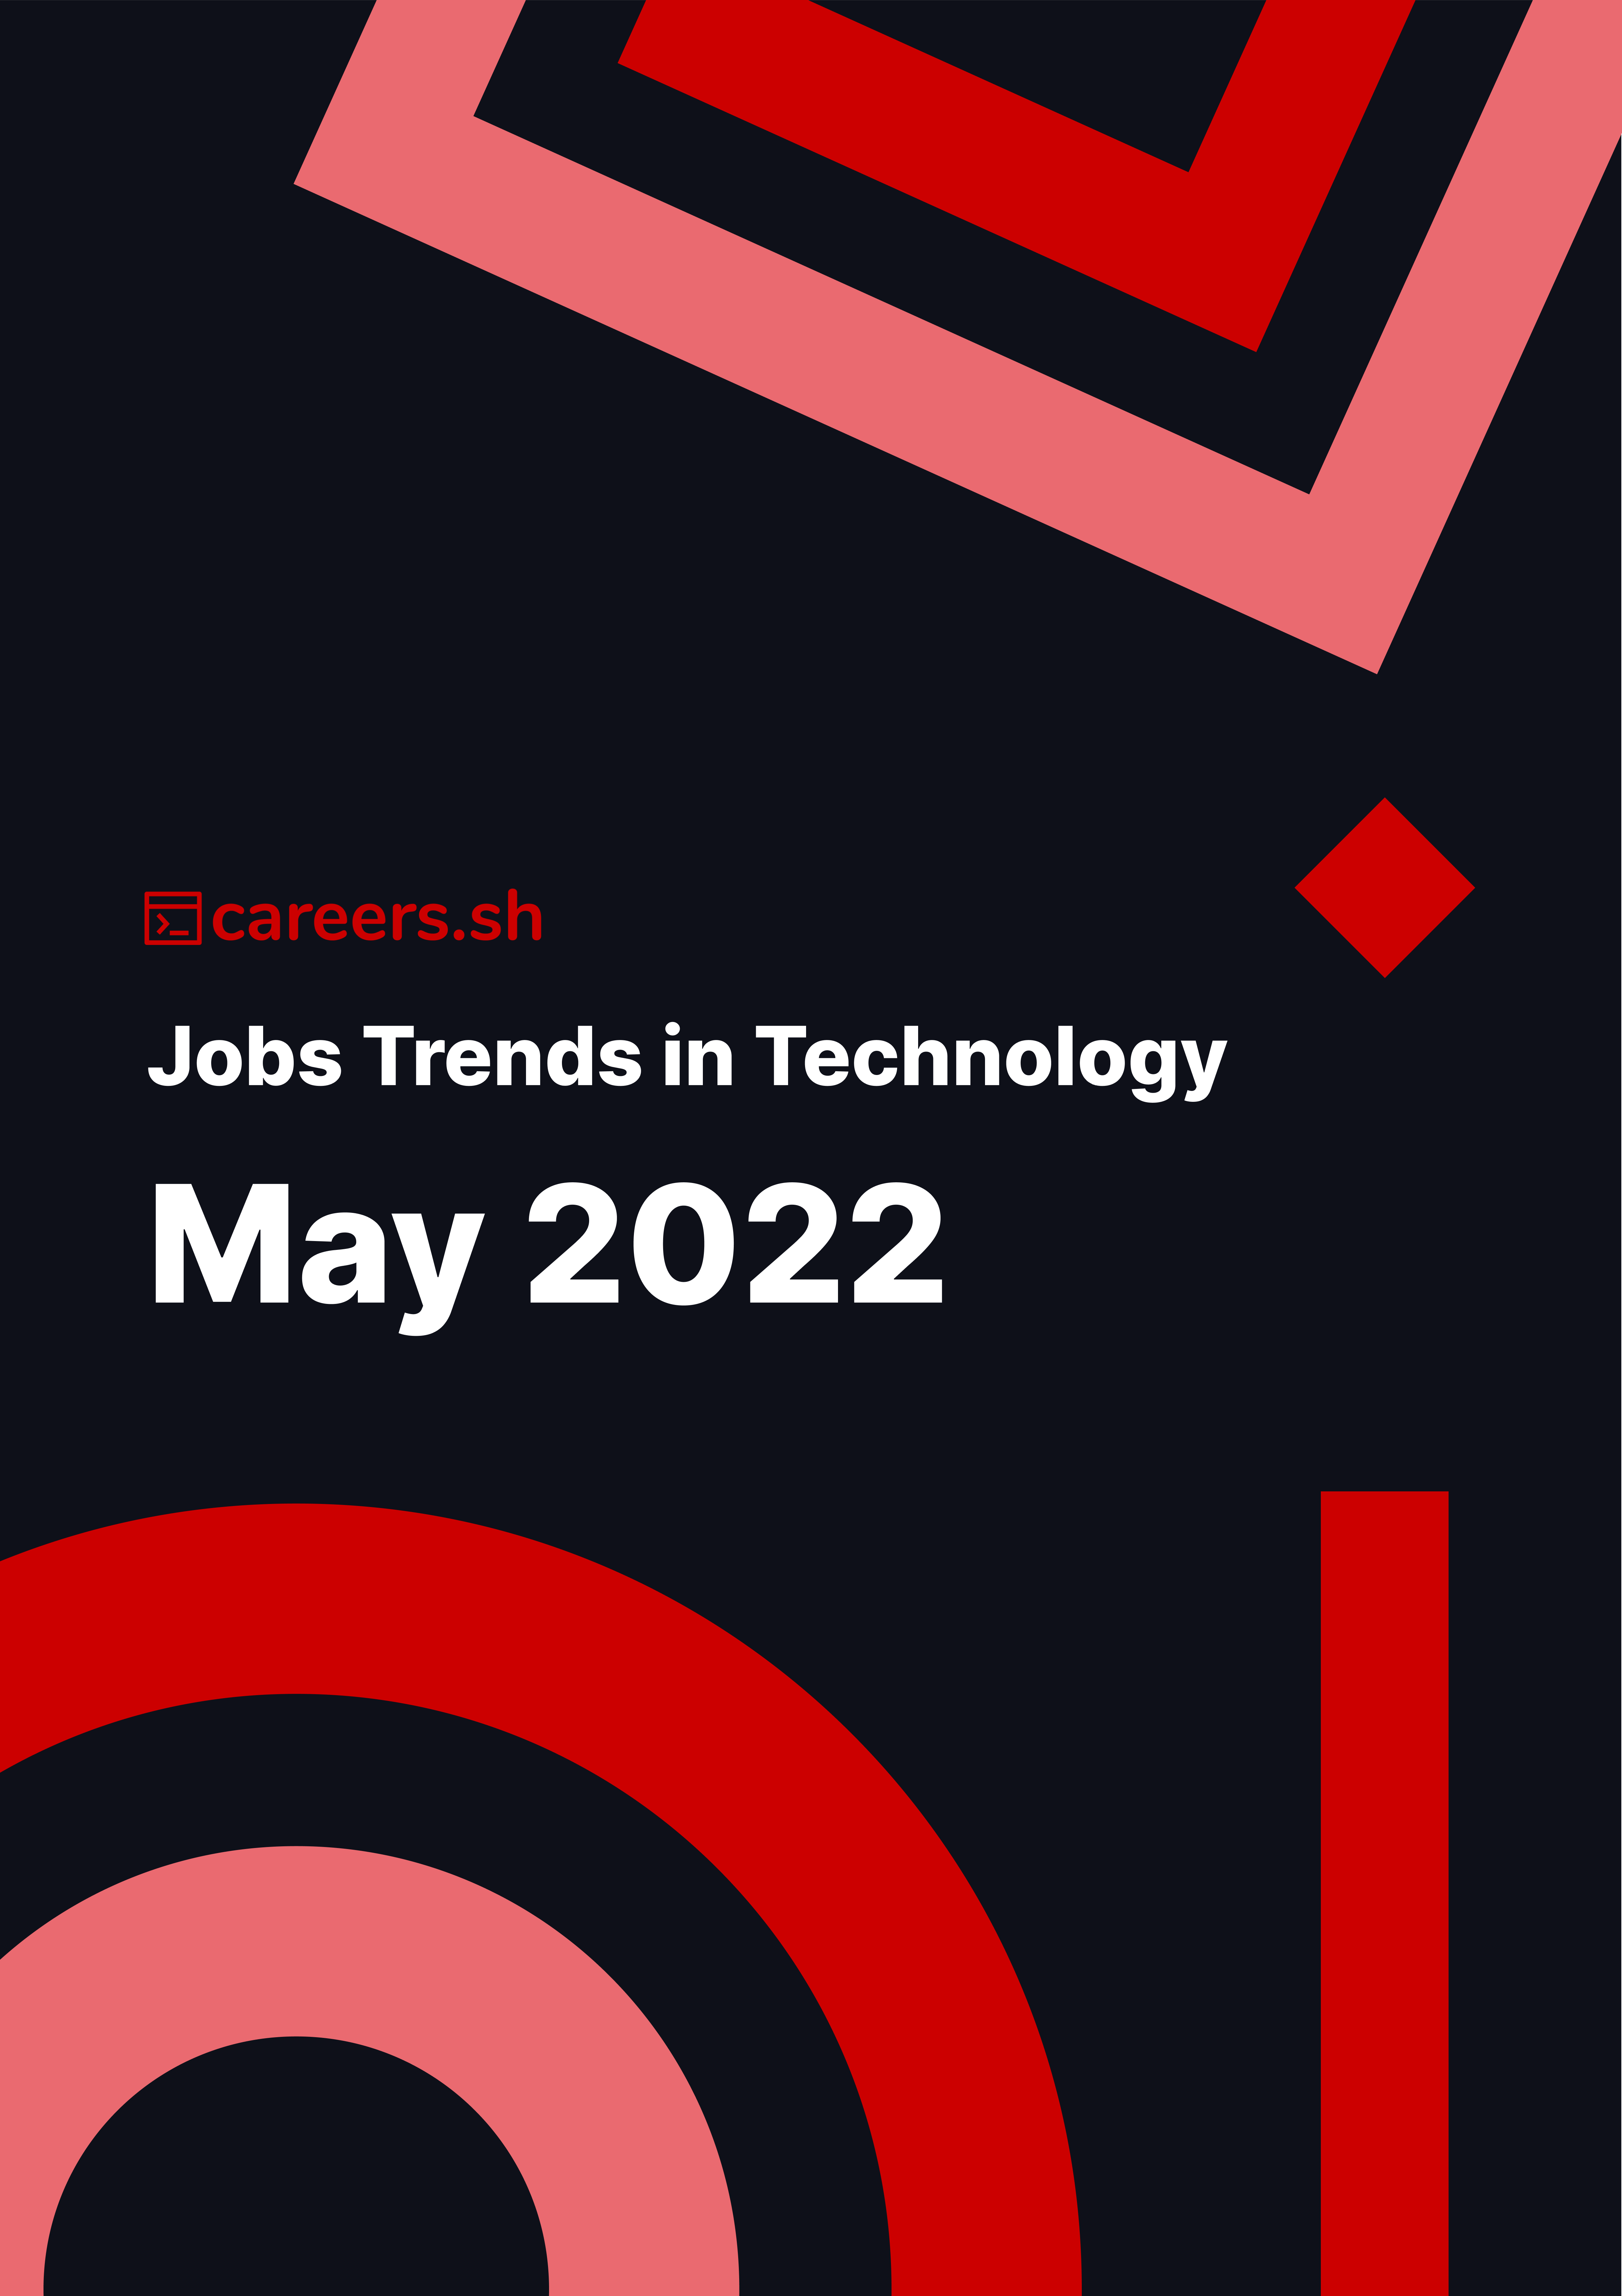 Careers.sh - May 2022